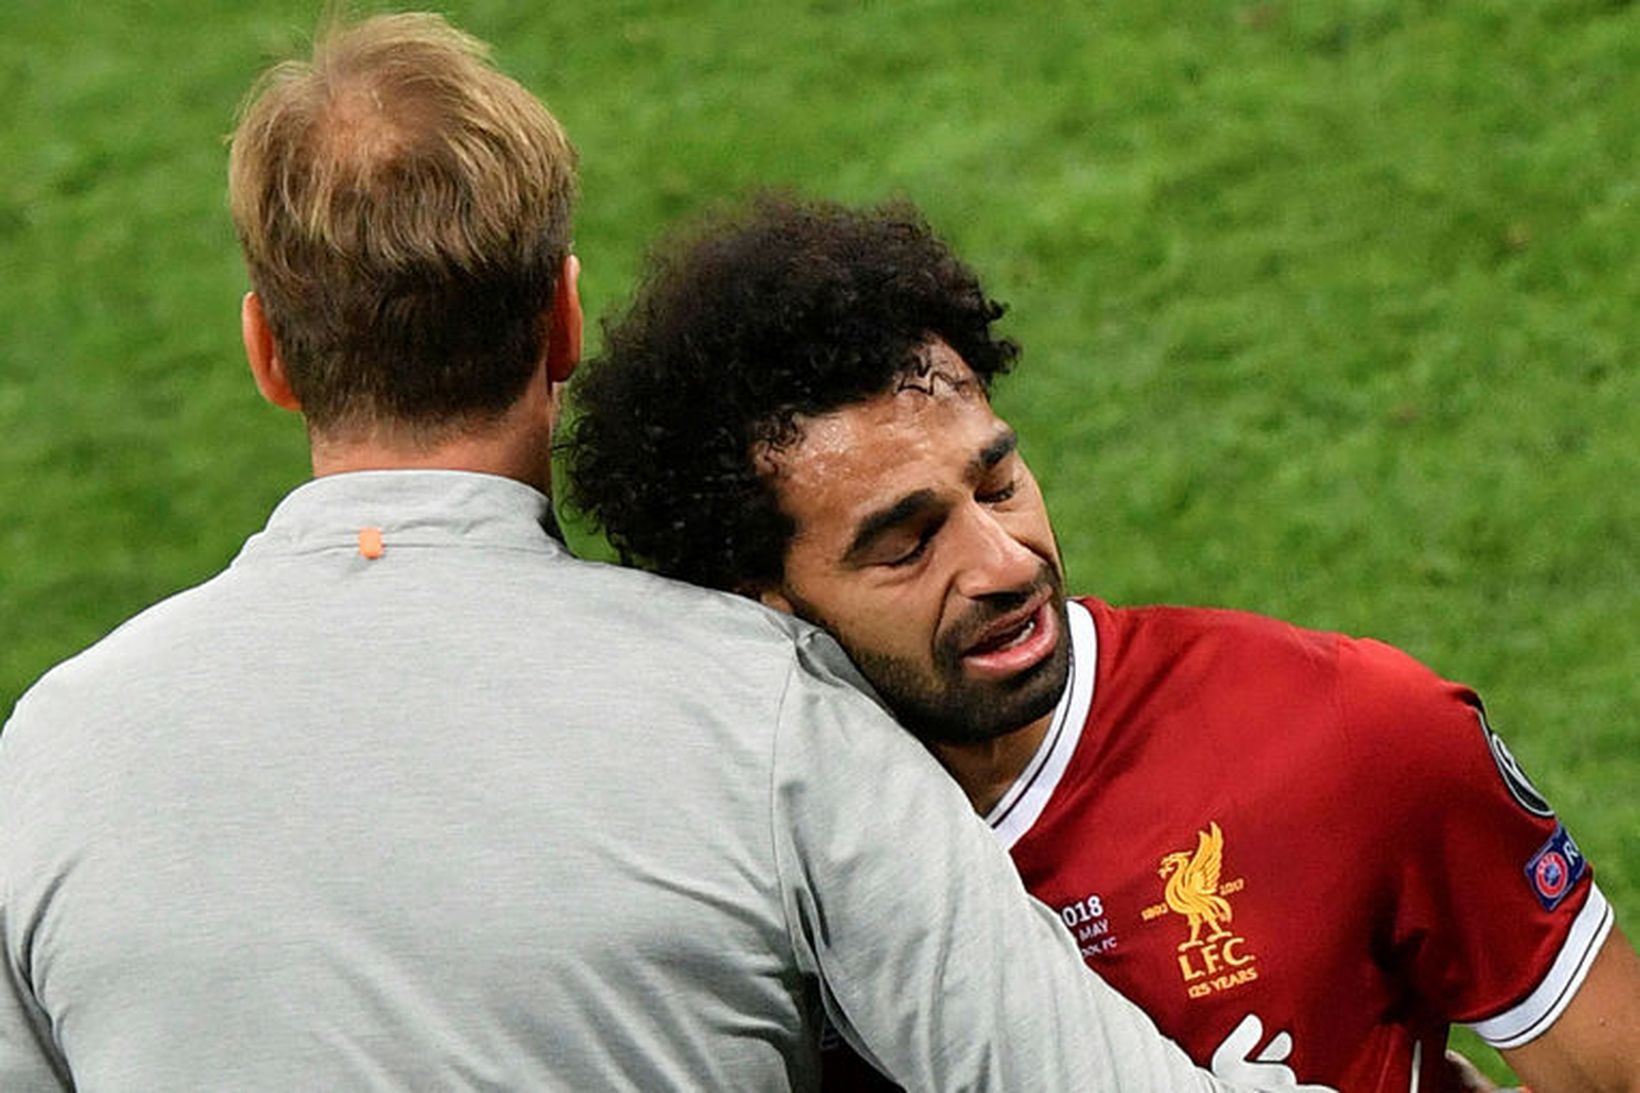 Mohamed Salah gékk grátandi af velli.